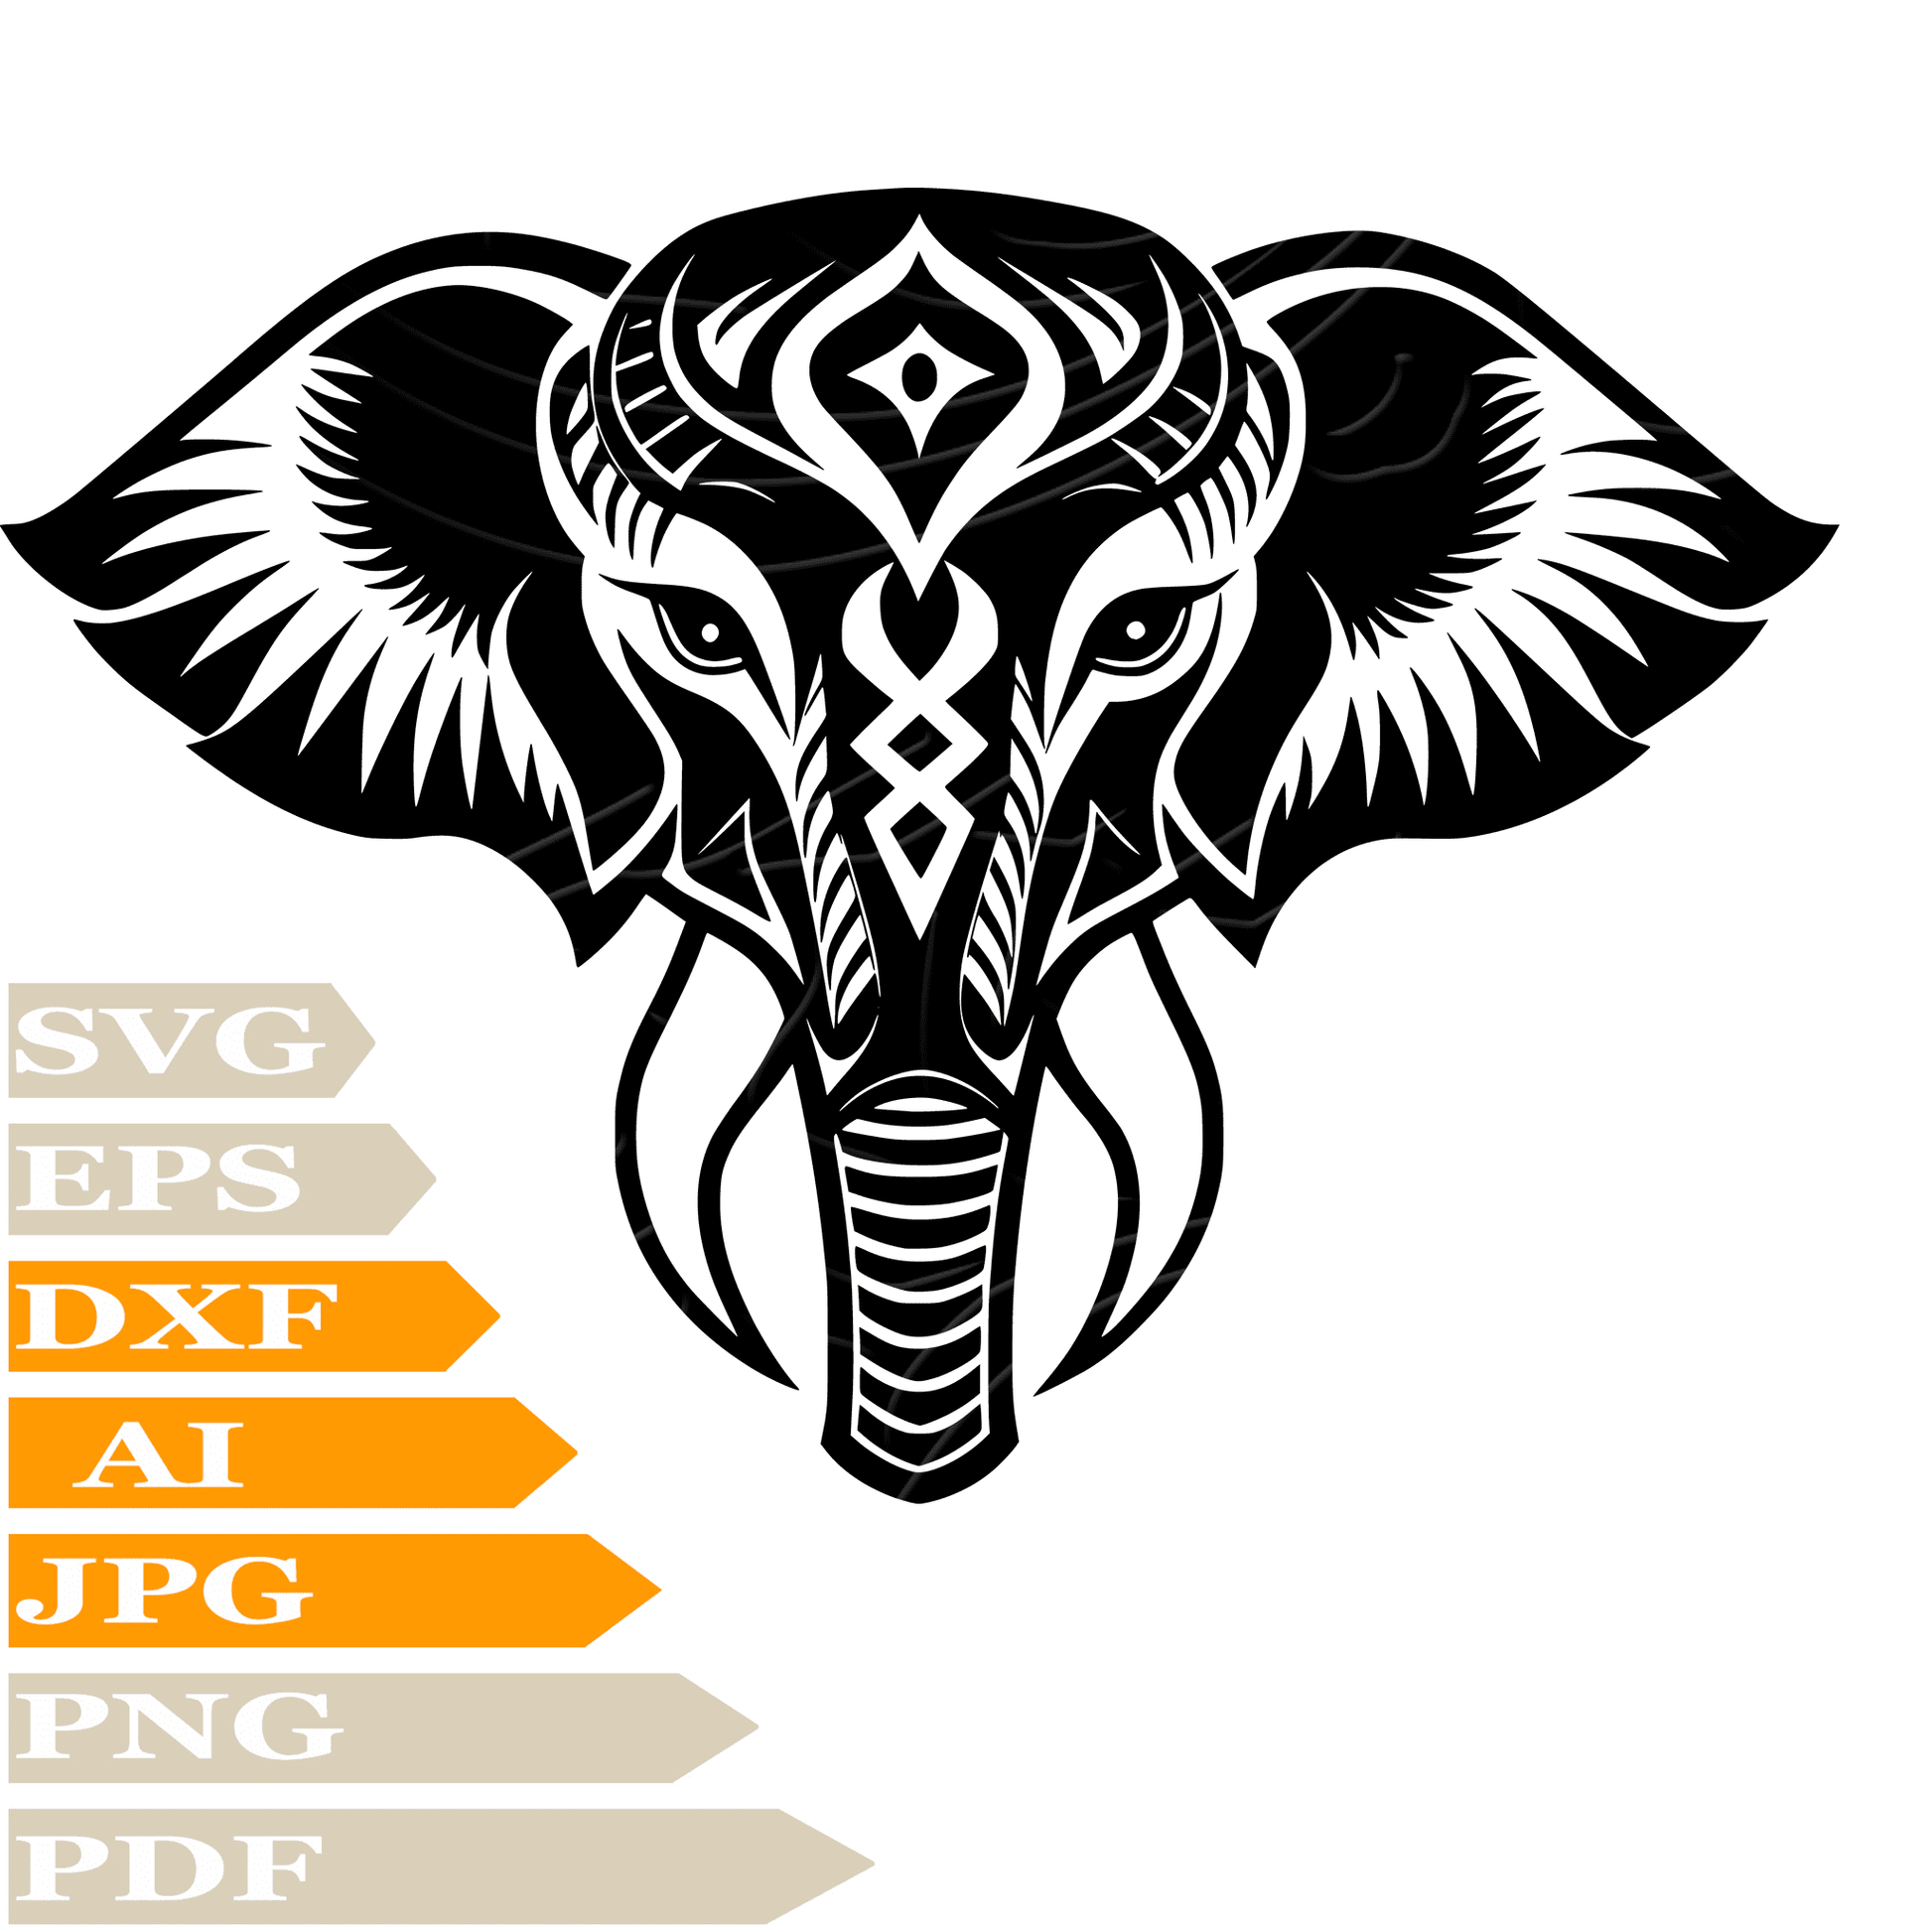 Elephant SVG File, Cute Elephant SVG Design, Elephant Head SVG, Elephant Vector, Funny Elephant PNG, Image Cut, For Cricut, Clipart, Cut File, Print, Digital Download, T-Shirt, Silhouette